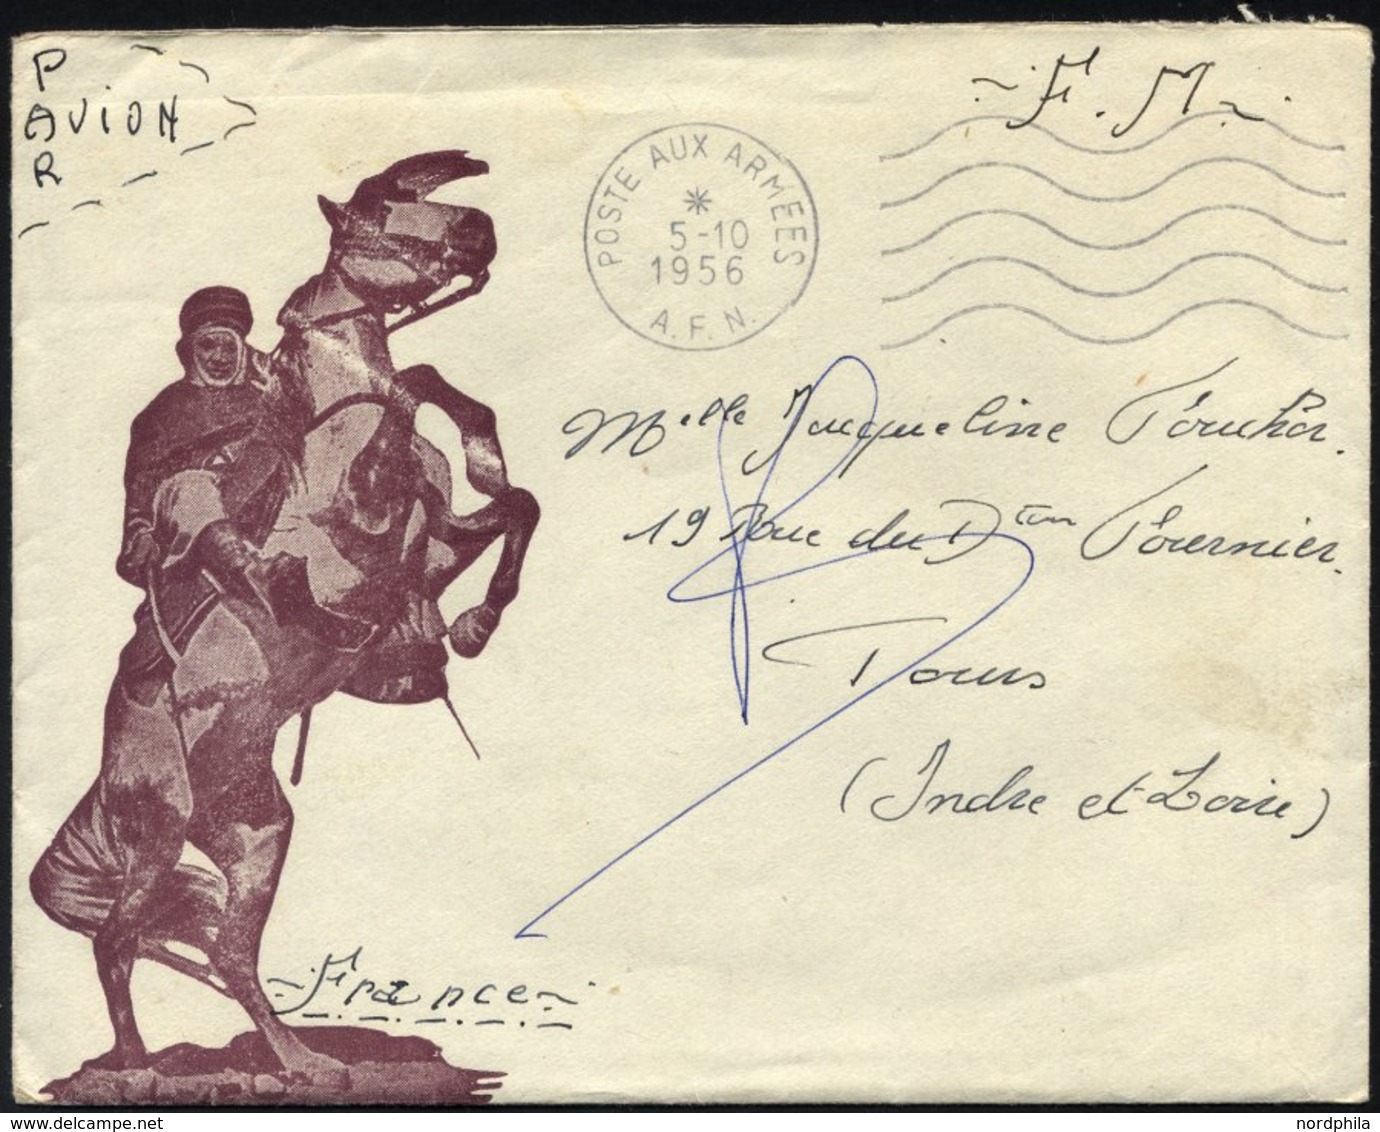 FRANKREICH FELDPOST 1956, K1 POSTE AUX ARMEES/A.F.N. Auf Feldpostbrief F.M. Nach Frankreich, Pracht - War Stamps